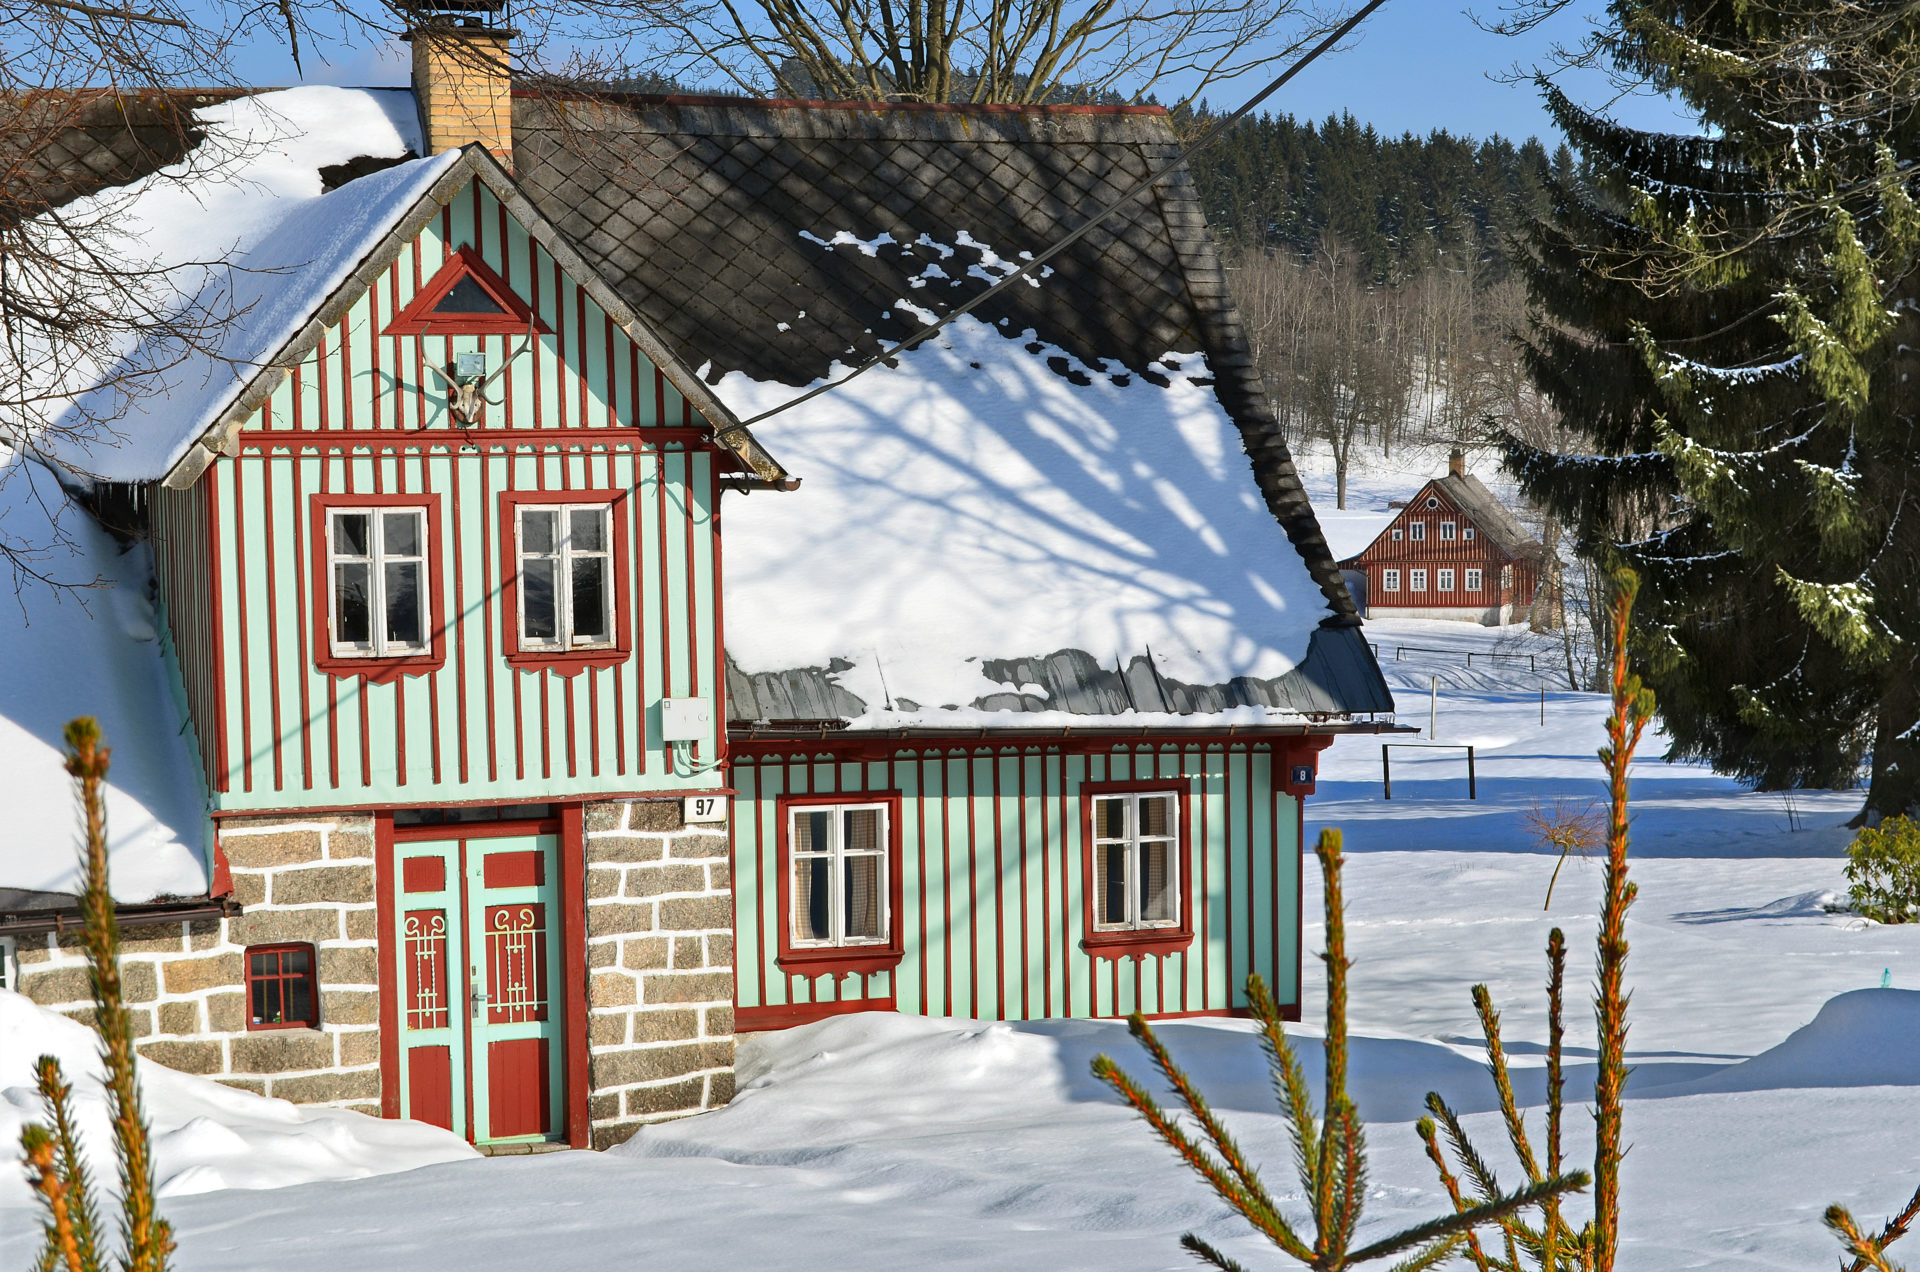 Dřevěná chalupa v Jizerských horách (Karlov) v zimě - roubení v zeleno-červeno-bílé barvě